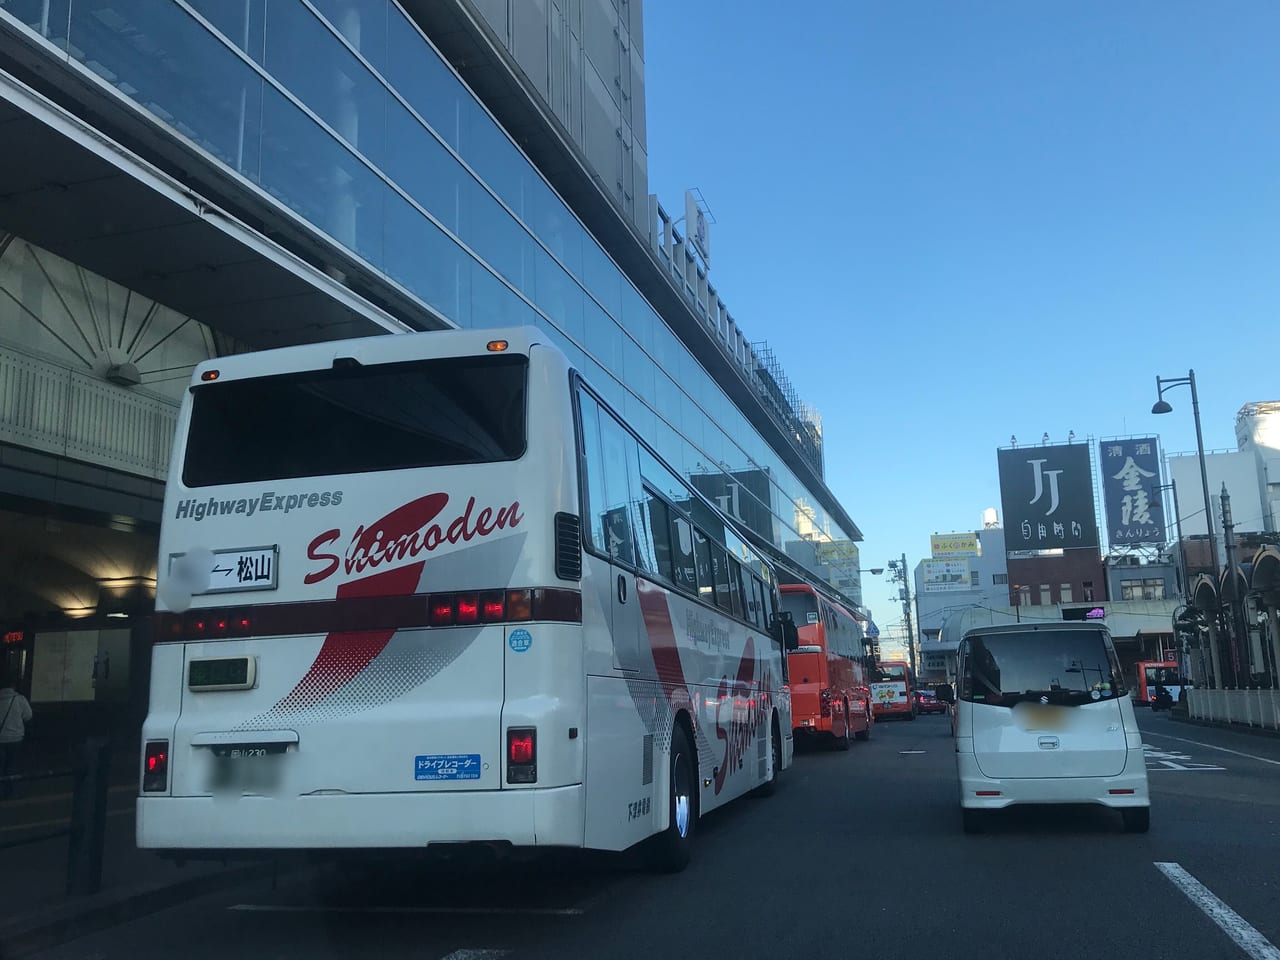 松山市 ショック 年3月からjr四国バスが運行していた東京行き高速夜行バスが休止決定 理由は 今後復活は 気になるあれこれ調べました 号外net 松山市 中予地方